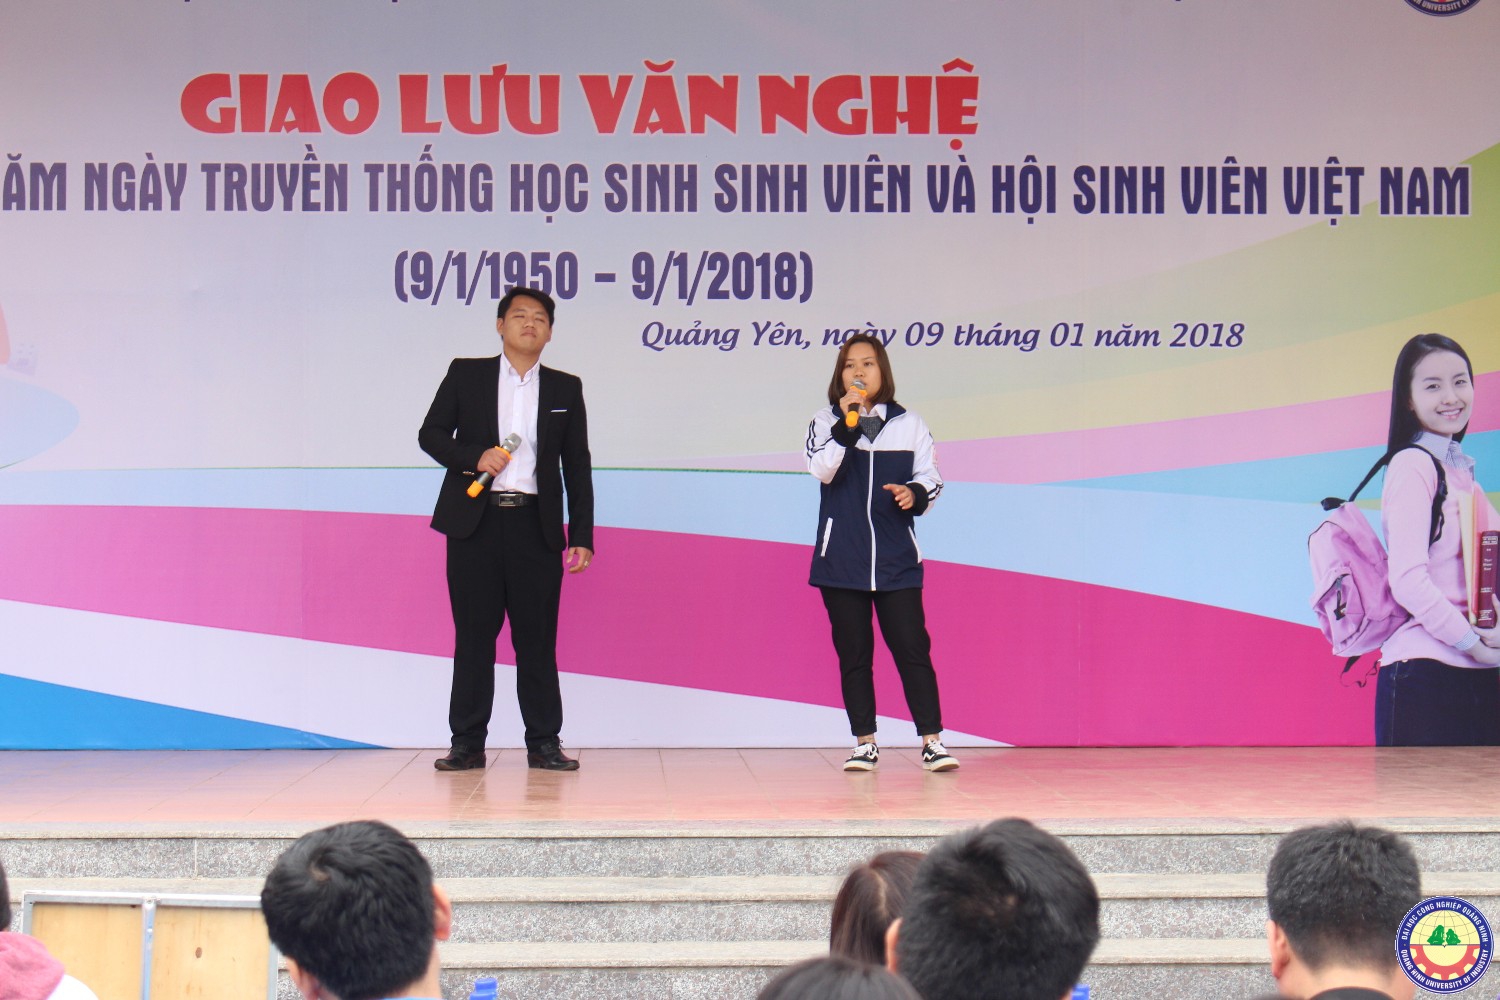 Giao lưu văn nghệ - tuyển sinh giữa trường ĐHCNQN và trường THPT Bạch Đằng (Quảng Yên) 9.1..2018